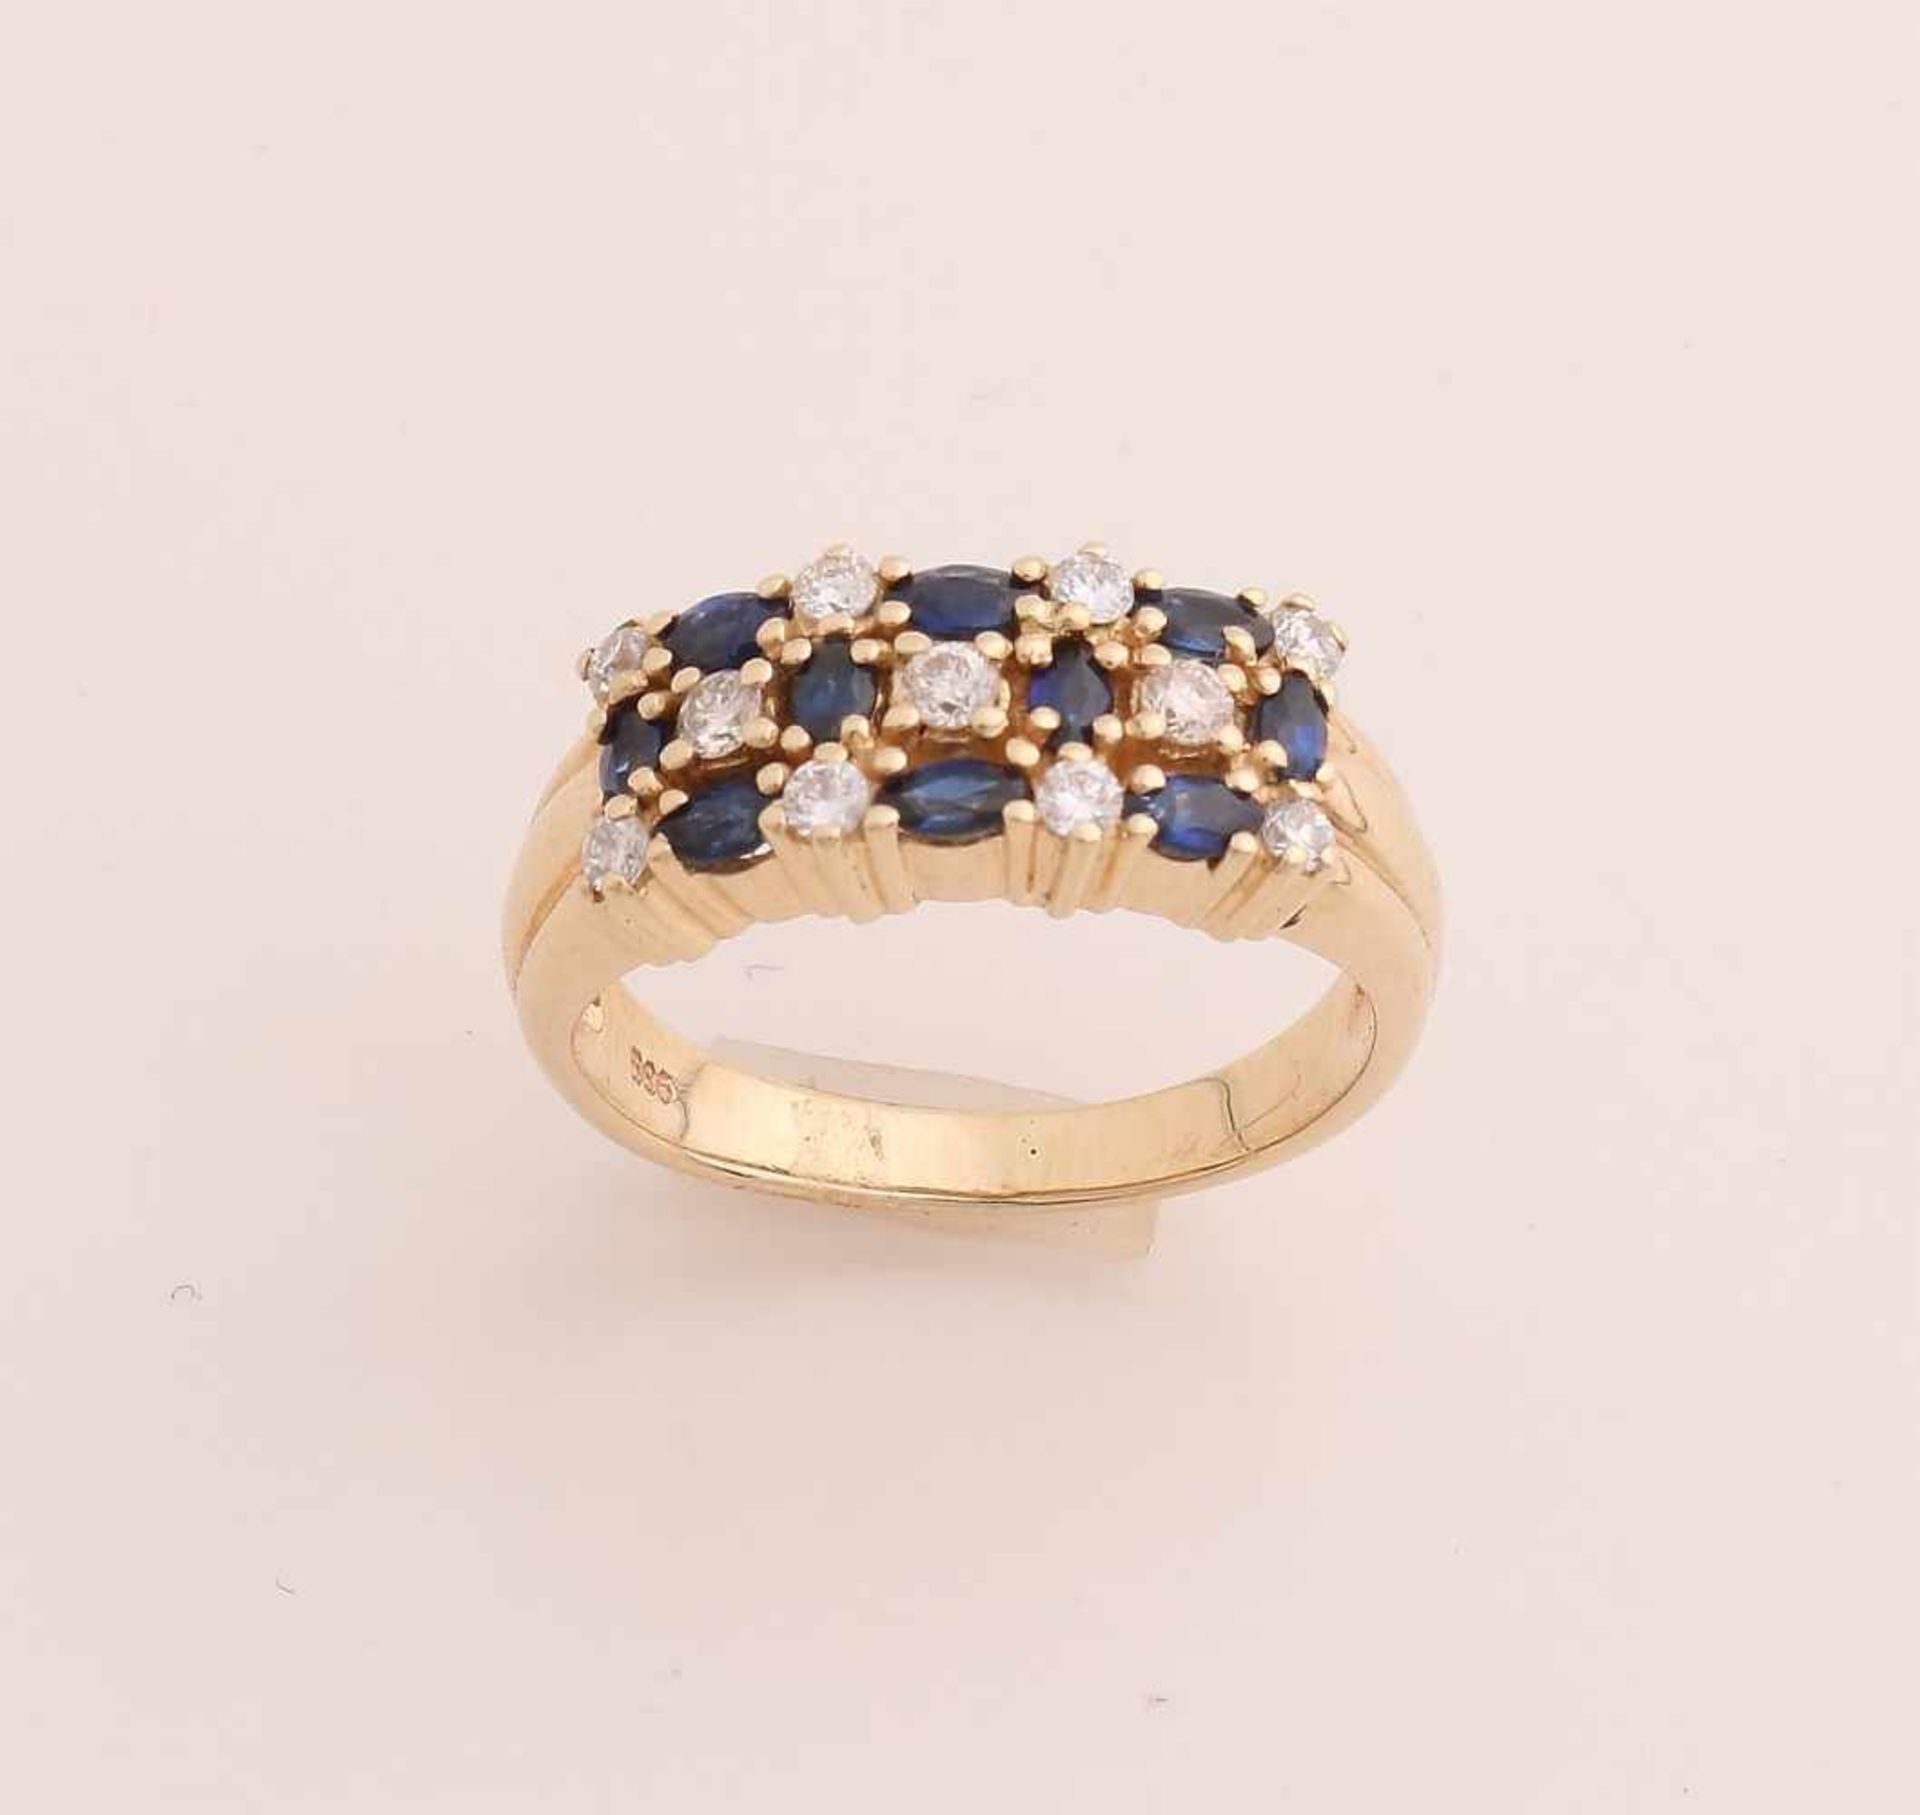 Gelbgoldring, 585/000, mit Diamant und Saphir. Ring bestehend aus 3 Reihen Bein-Chatons, abwechselnd